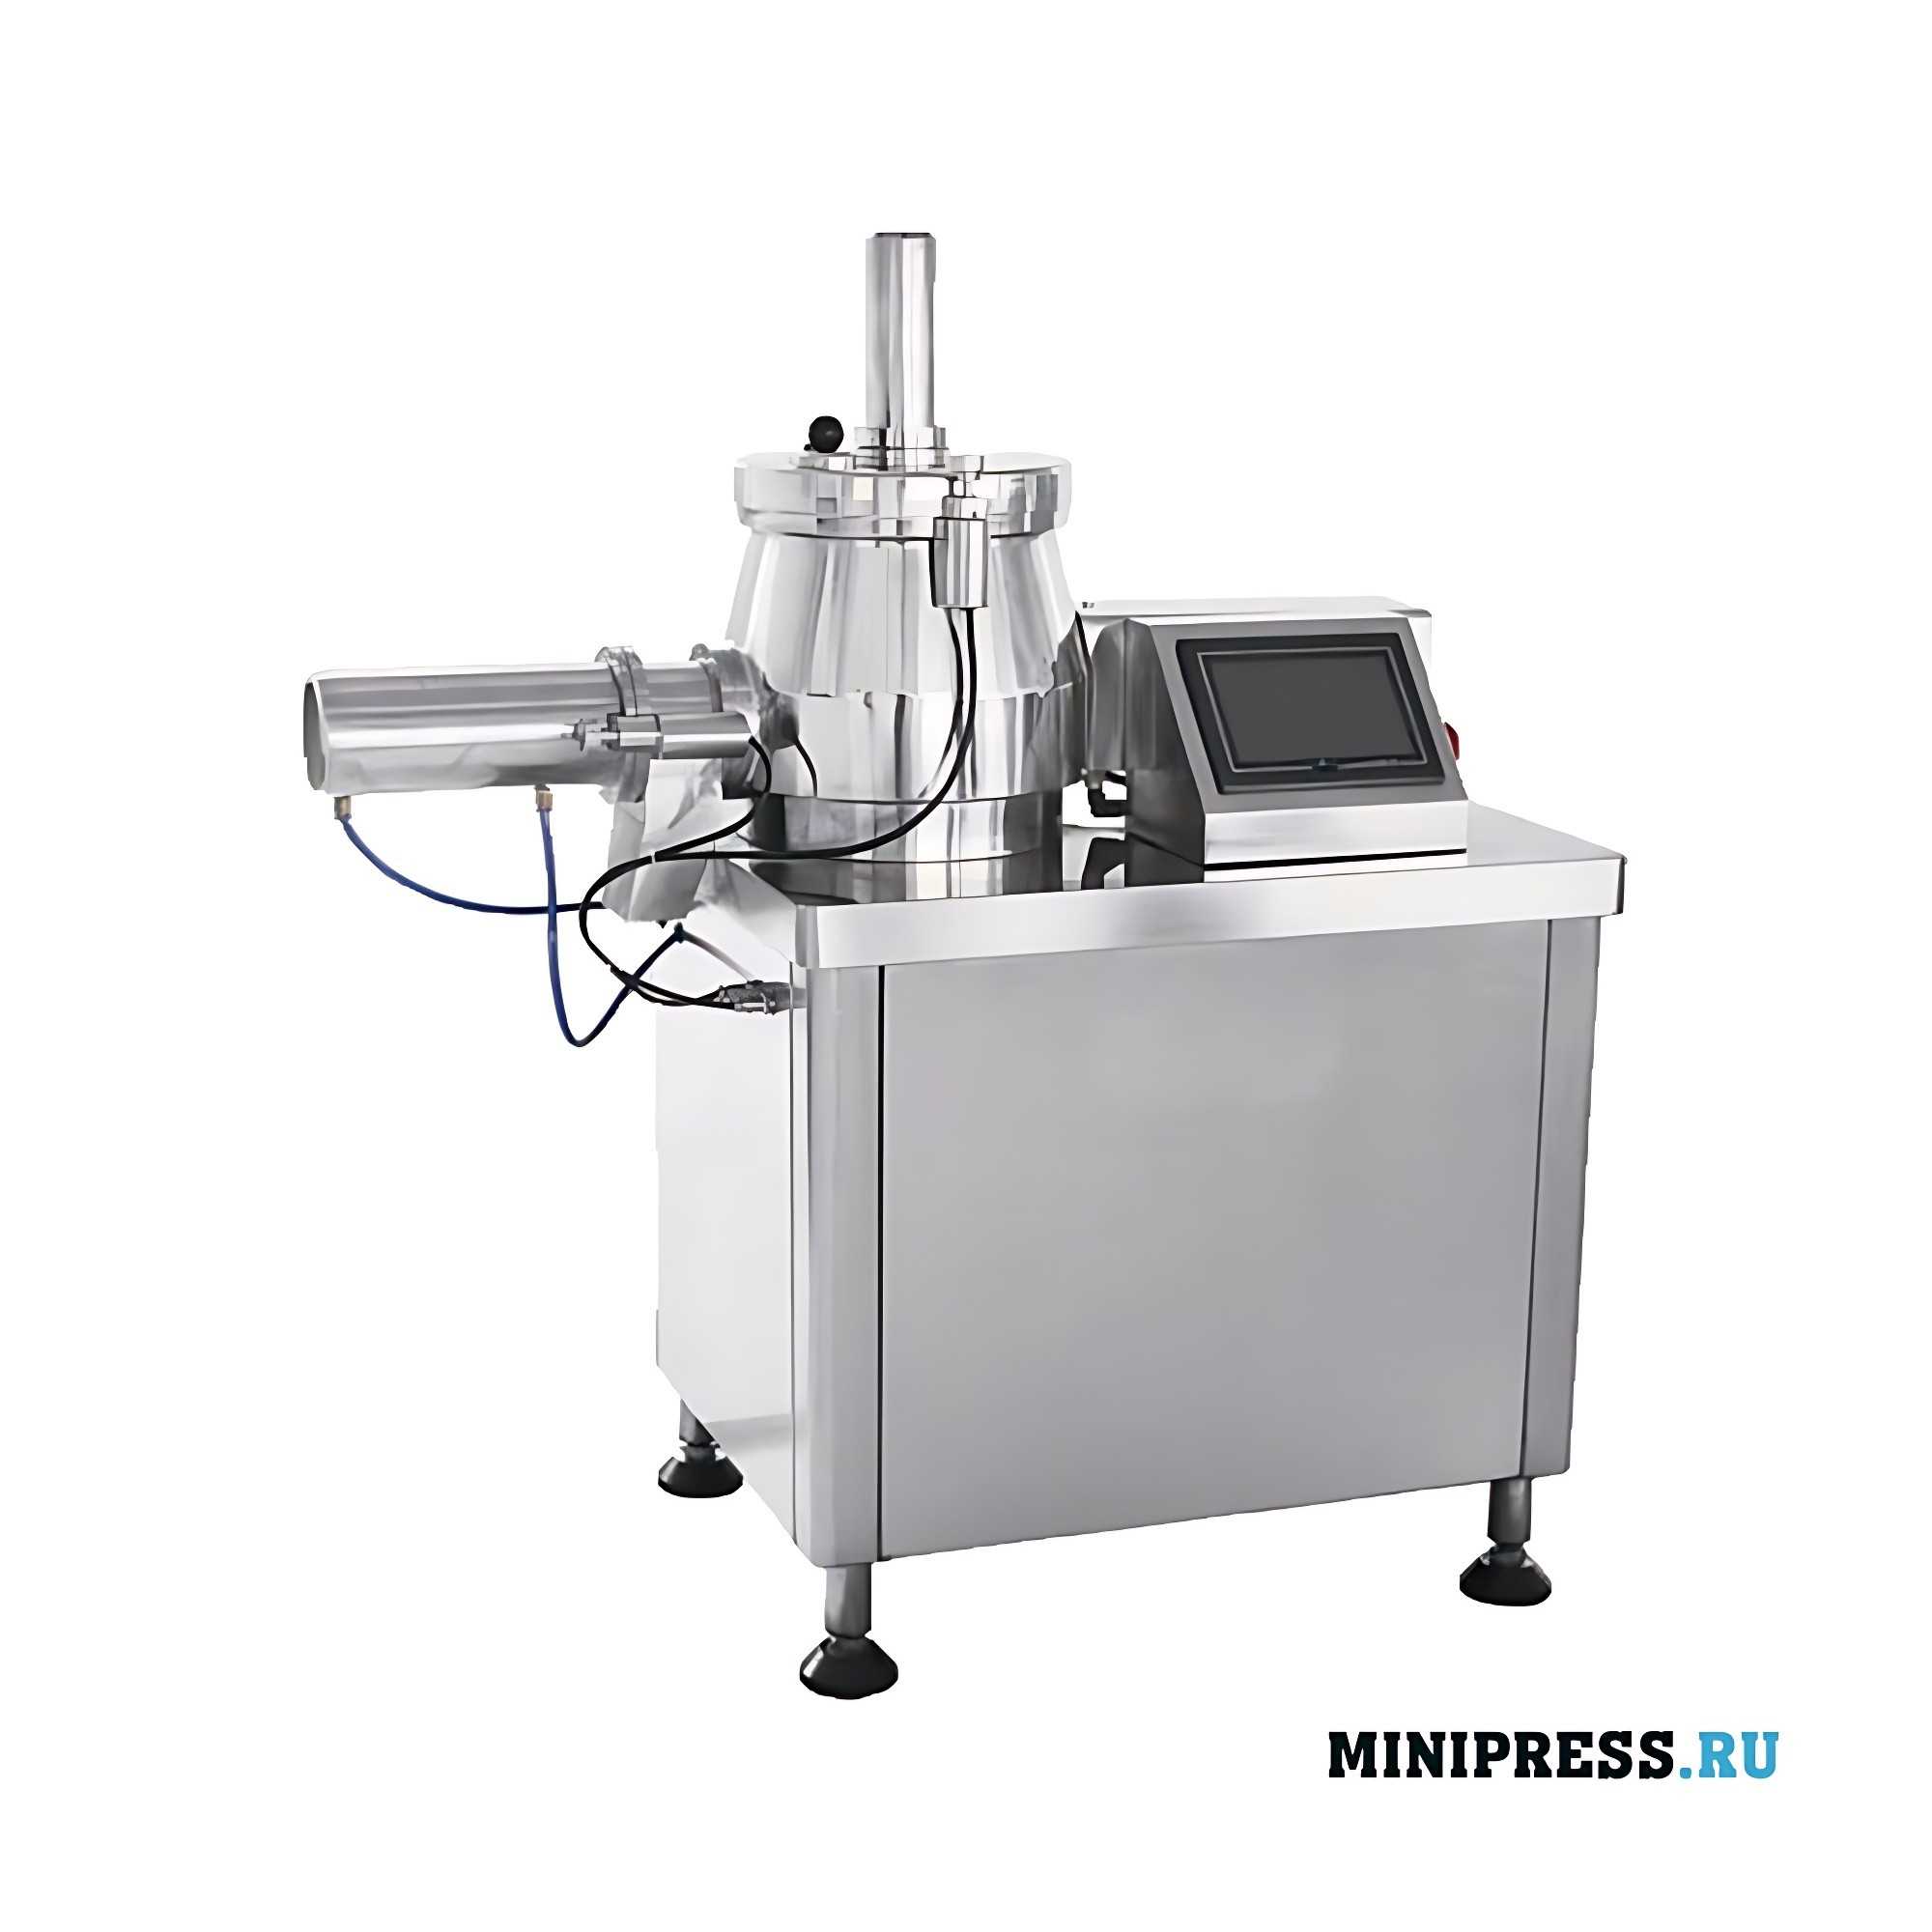 Granulador mezclador de alta eficiencia para granulación húmeda UNIP 1